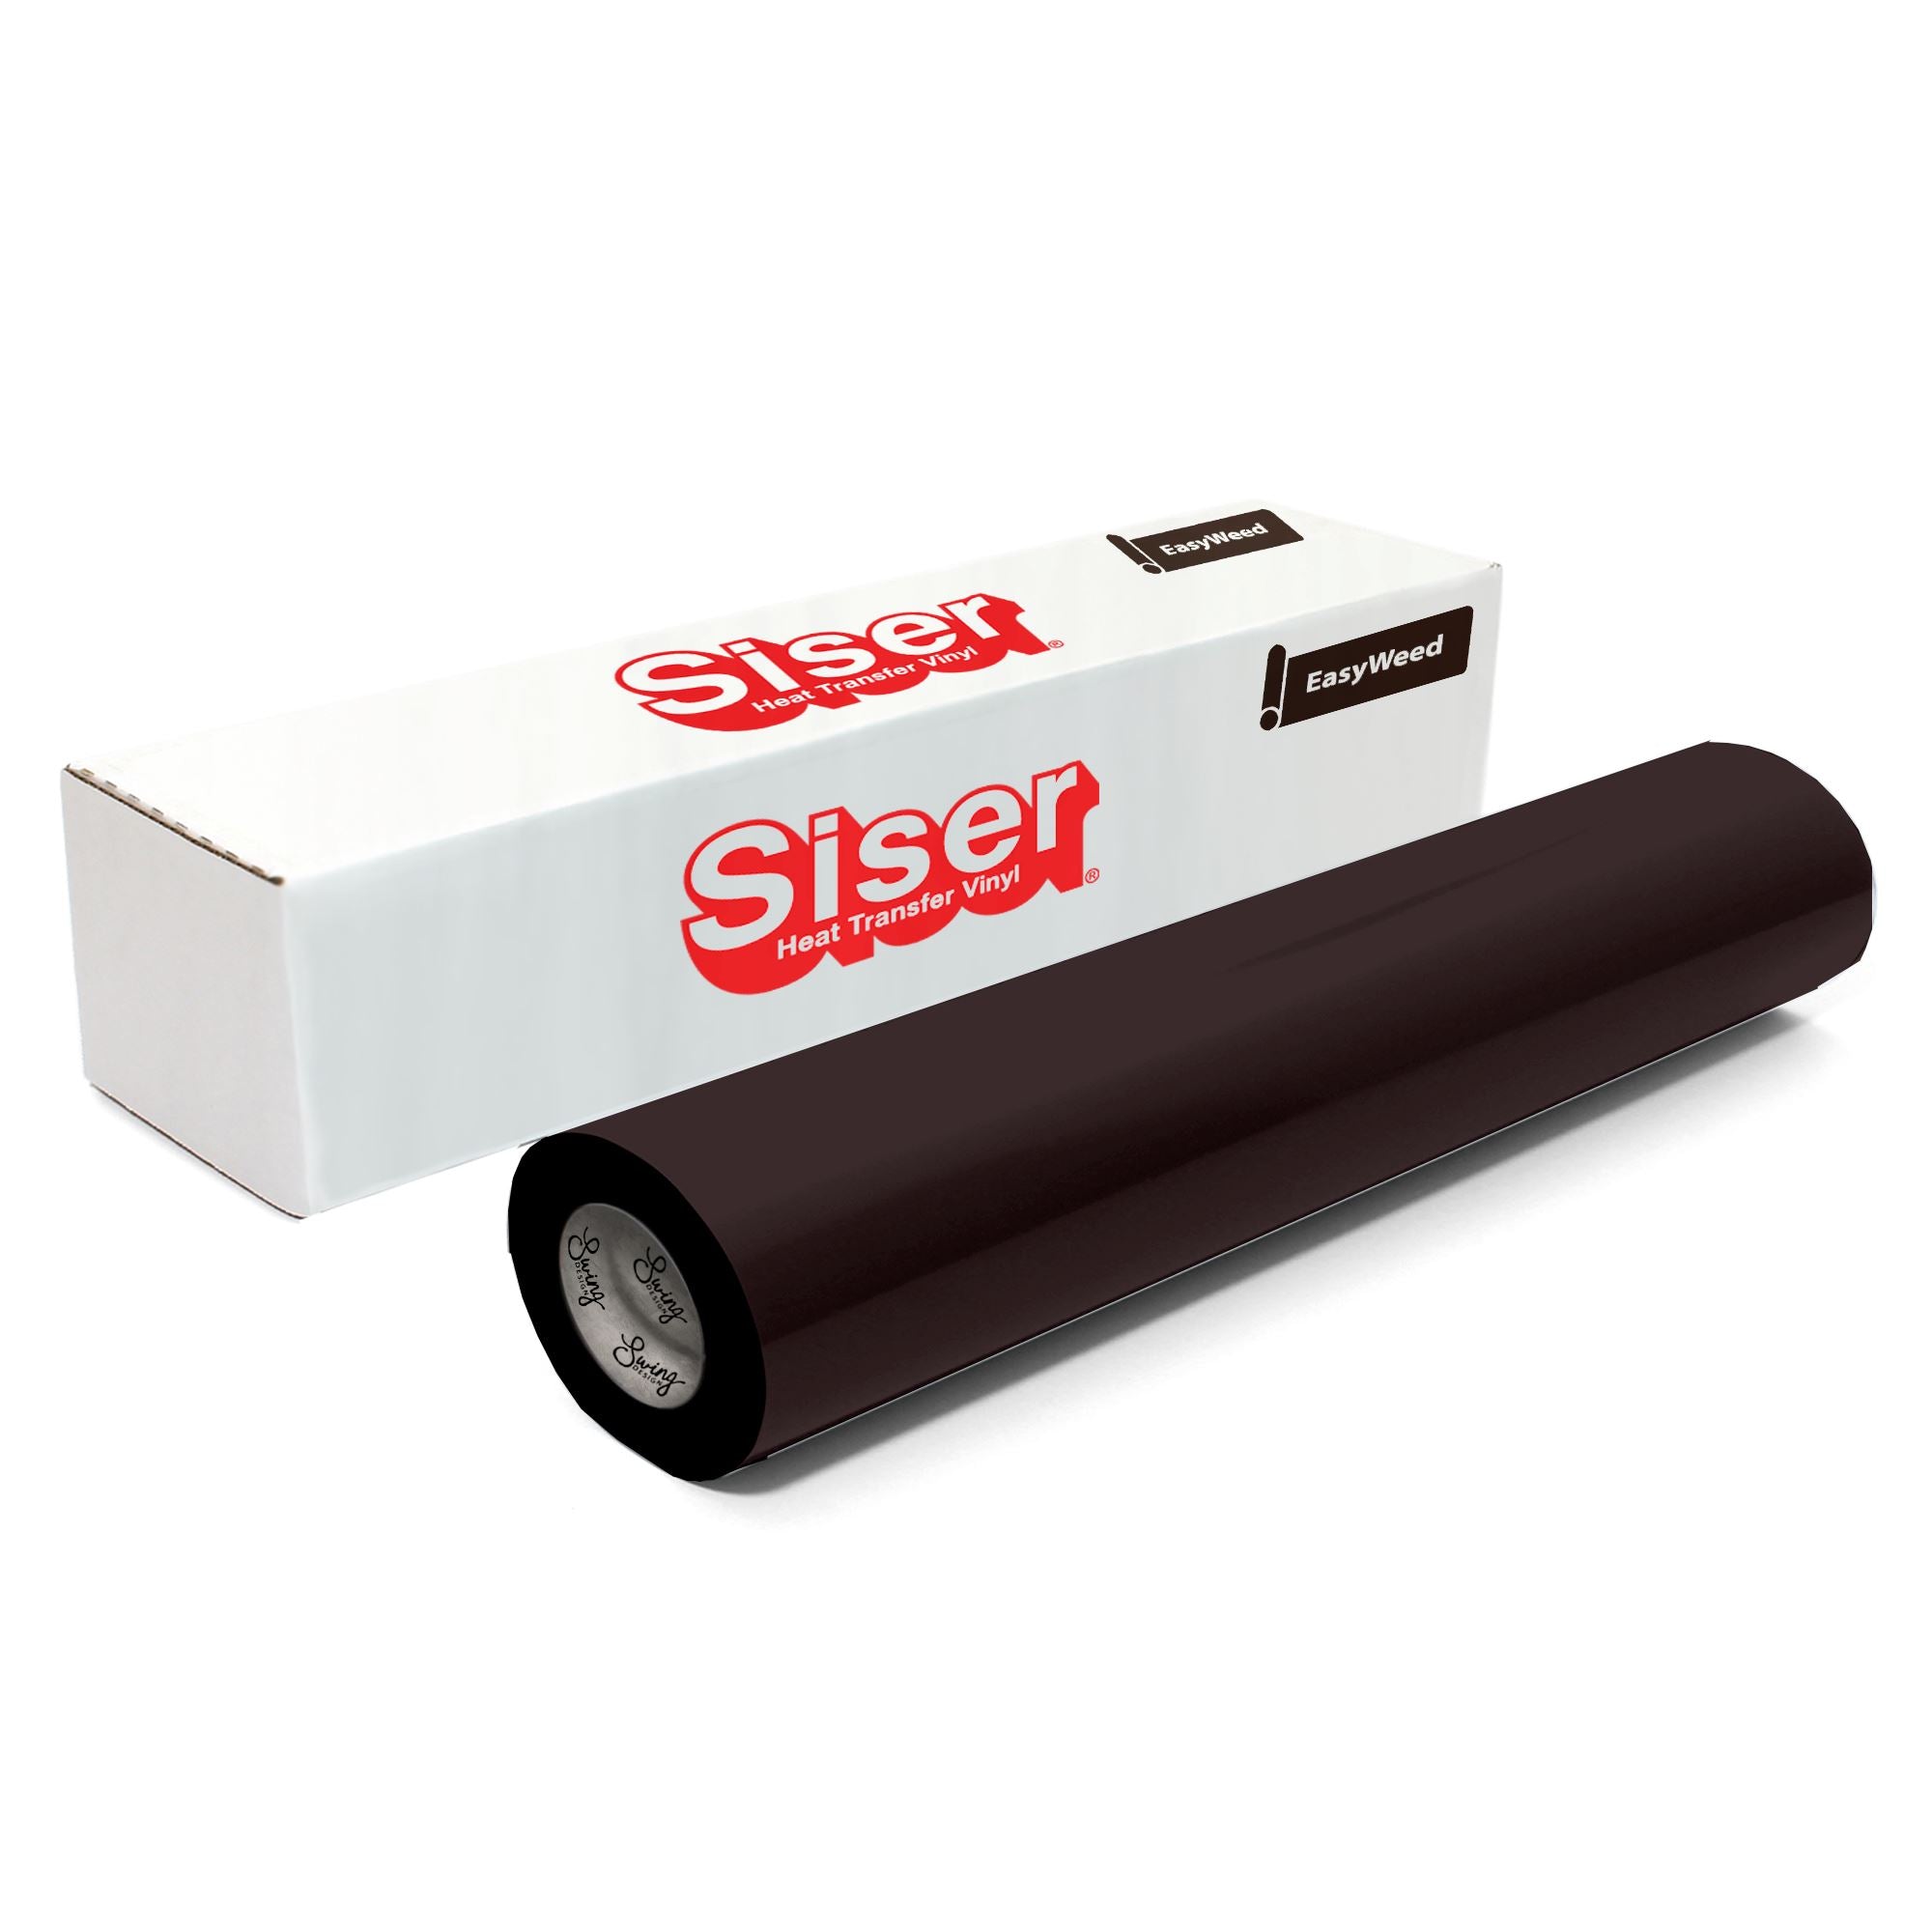 SISER EasyWeed - Heat Transfer Vinyl - 6-Roll Starter Kit